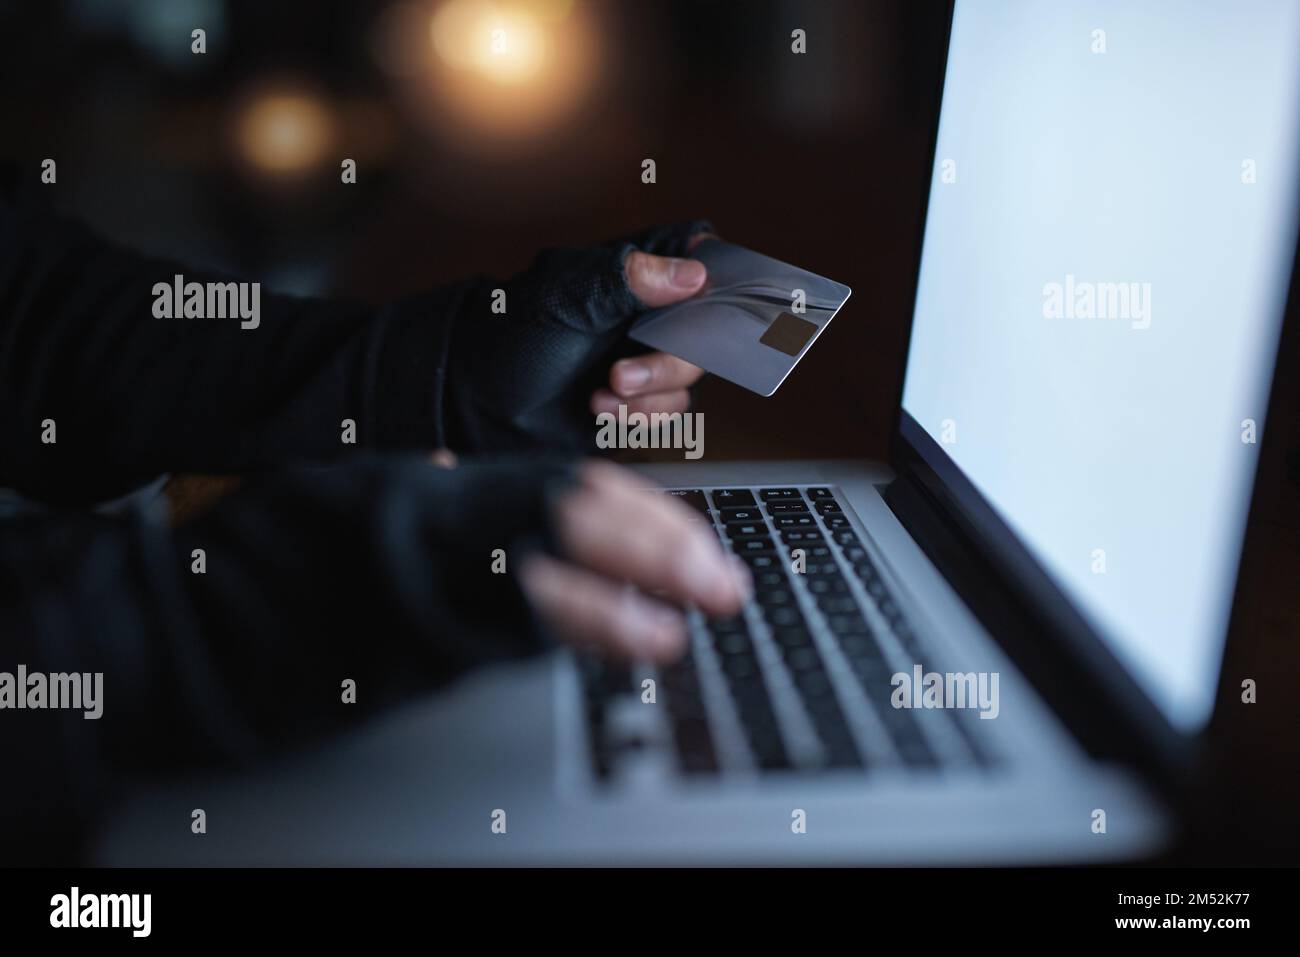 Hacker haben keine Angst davor, sich an Ihren Besitztümern zu bedienen. Ein nicht wiedererkennbarer Hacker, der einen Laptop benutzt, um sich in ein Kreditkonto zu hacken. Stockfoto